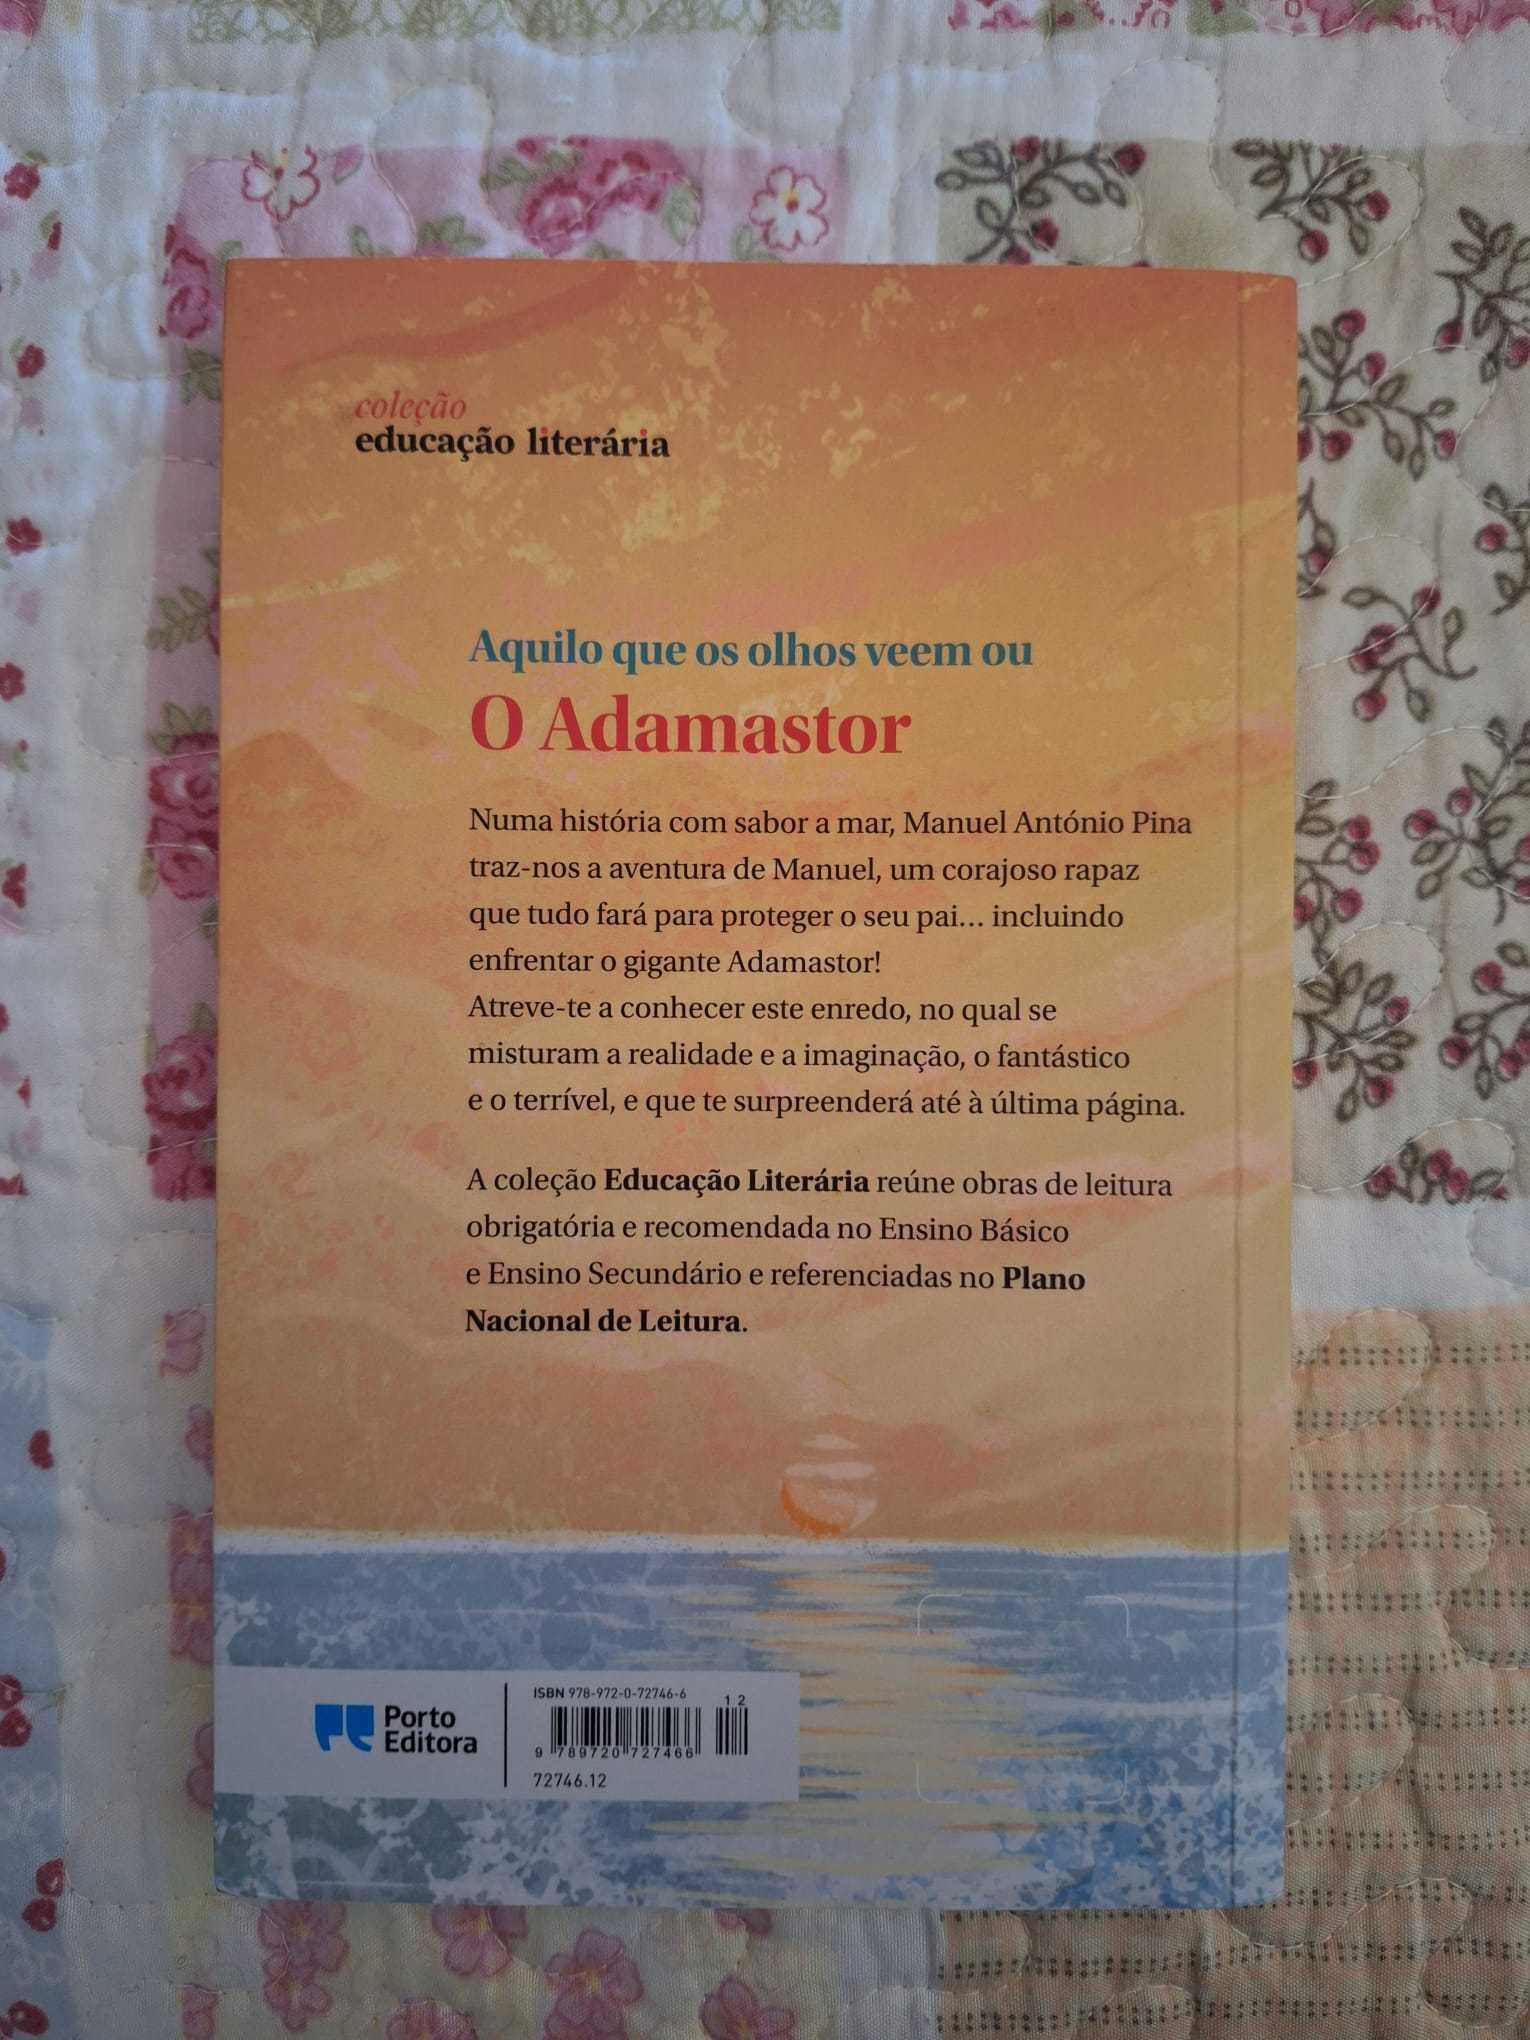 Livro "O Adamastor"